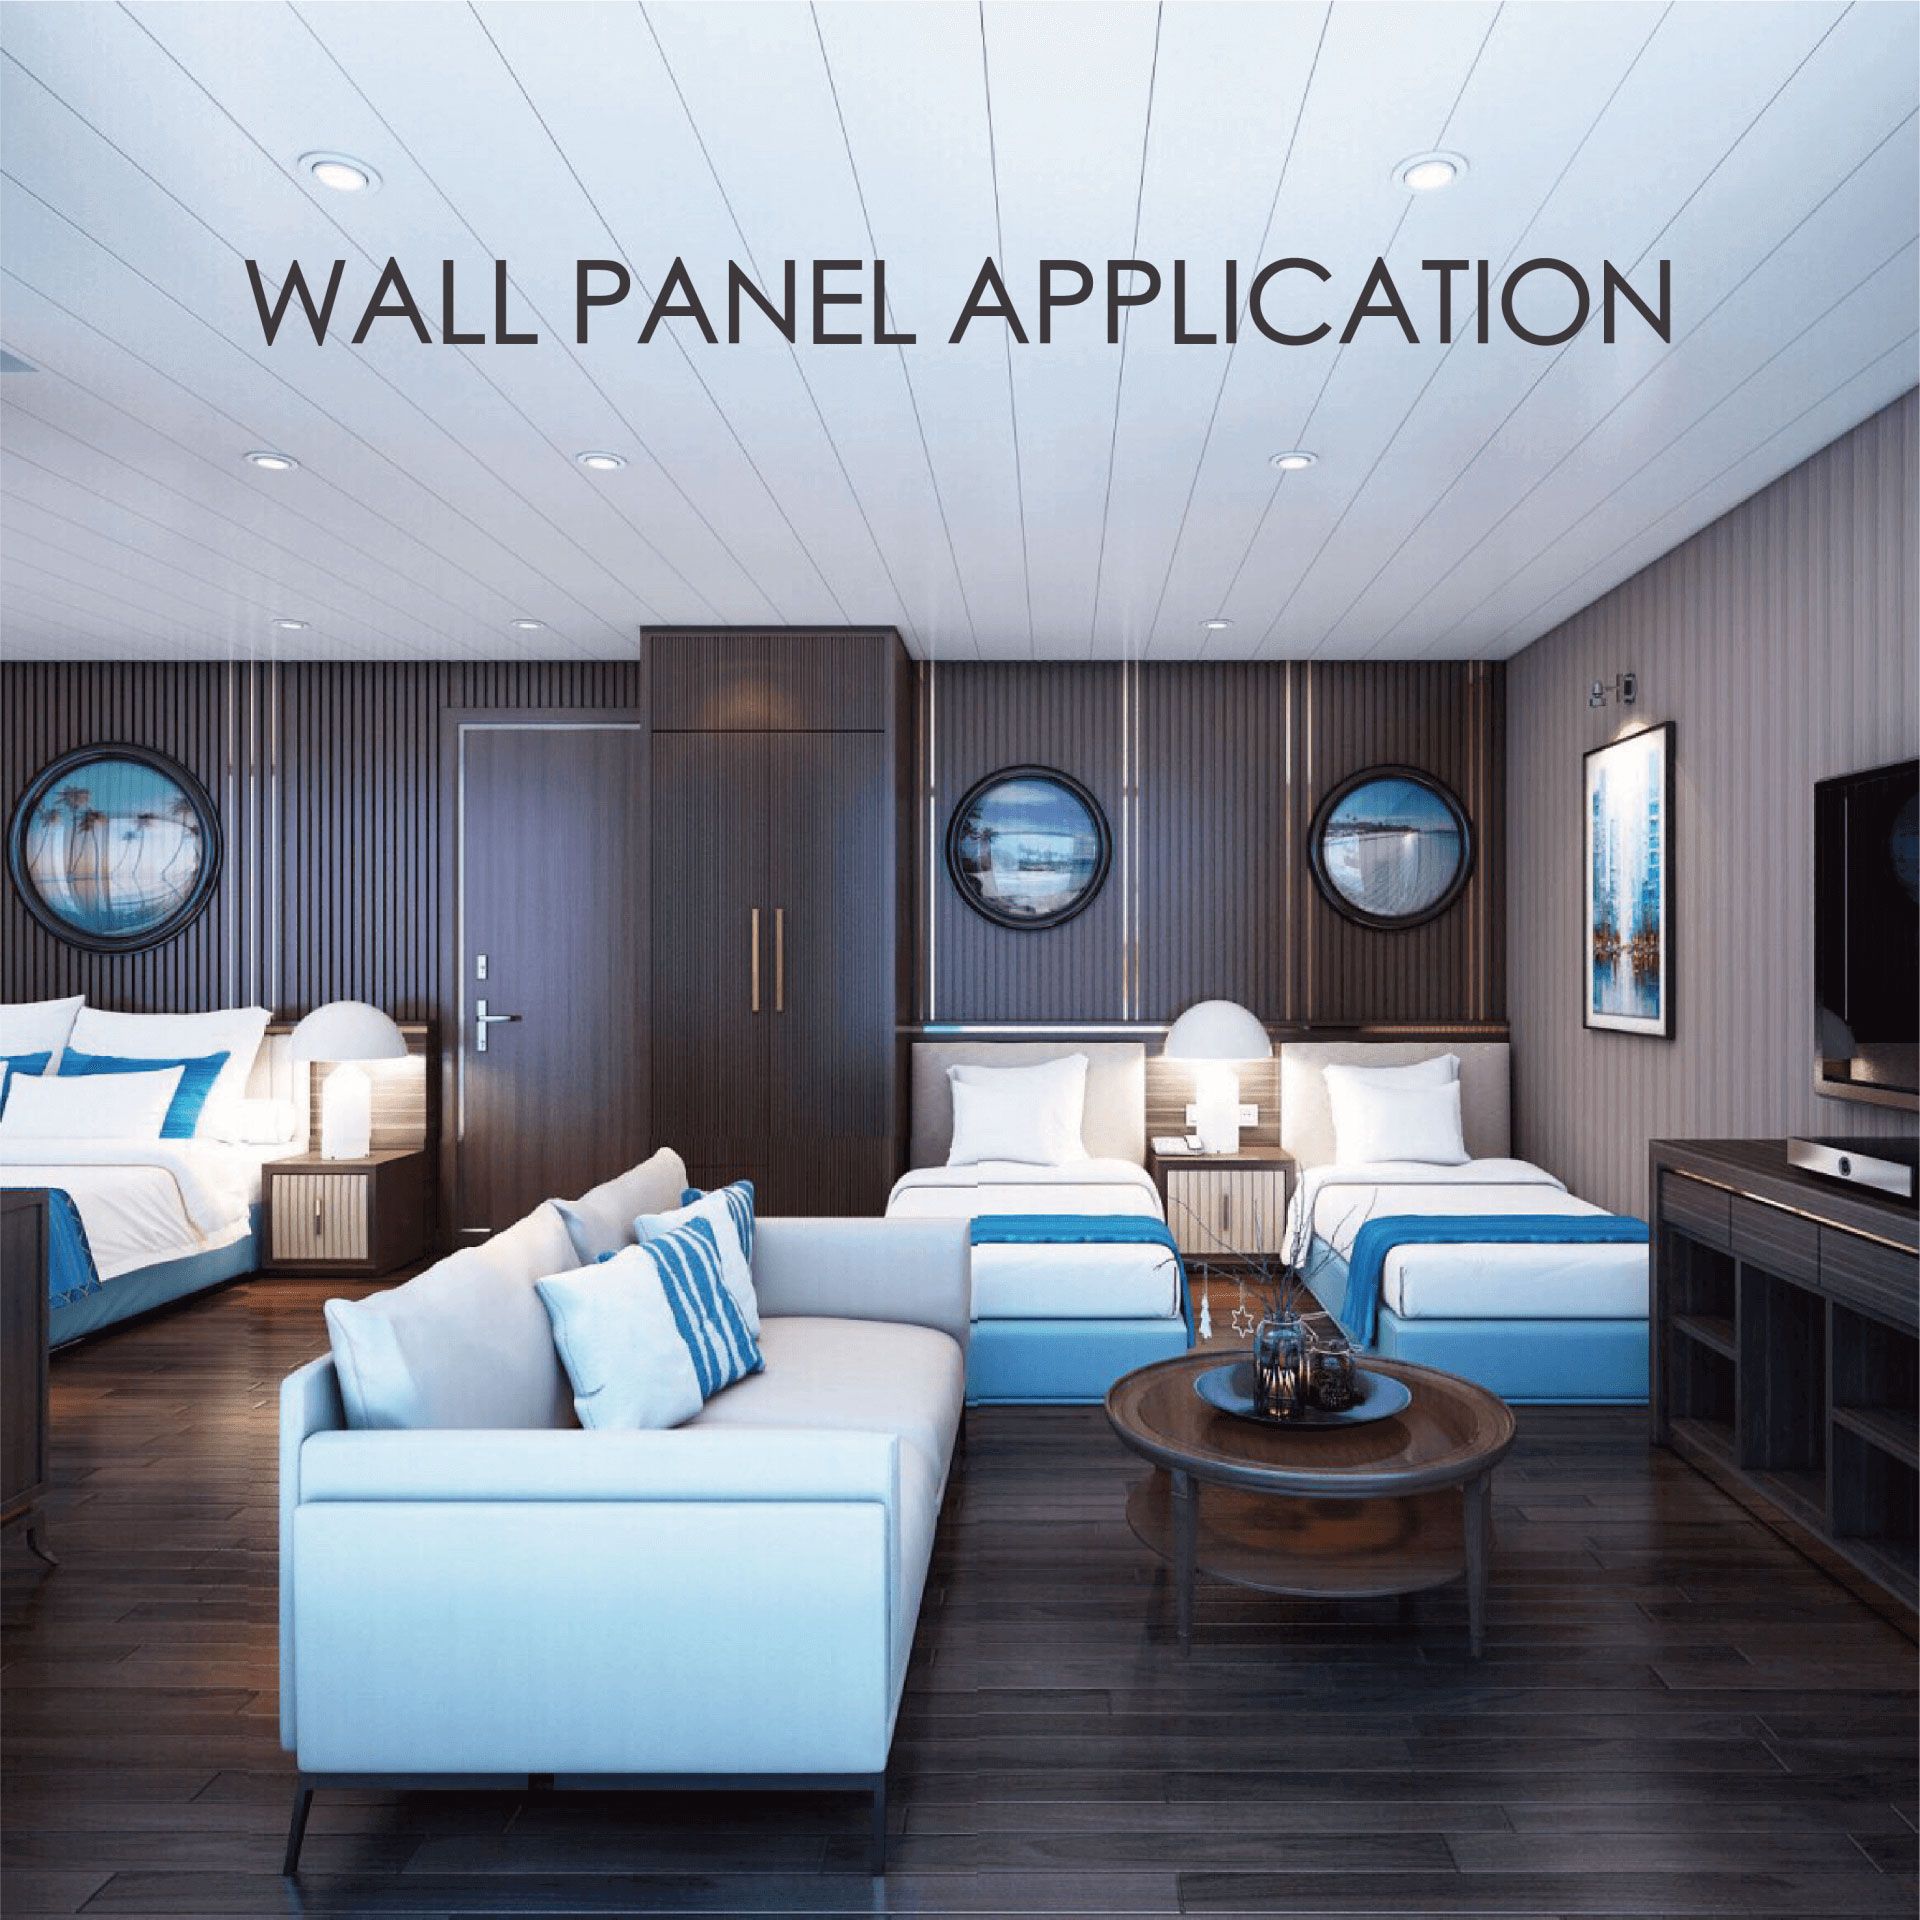 Aplikace stěnového panelu